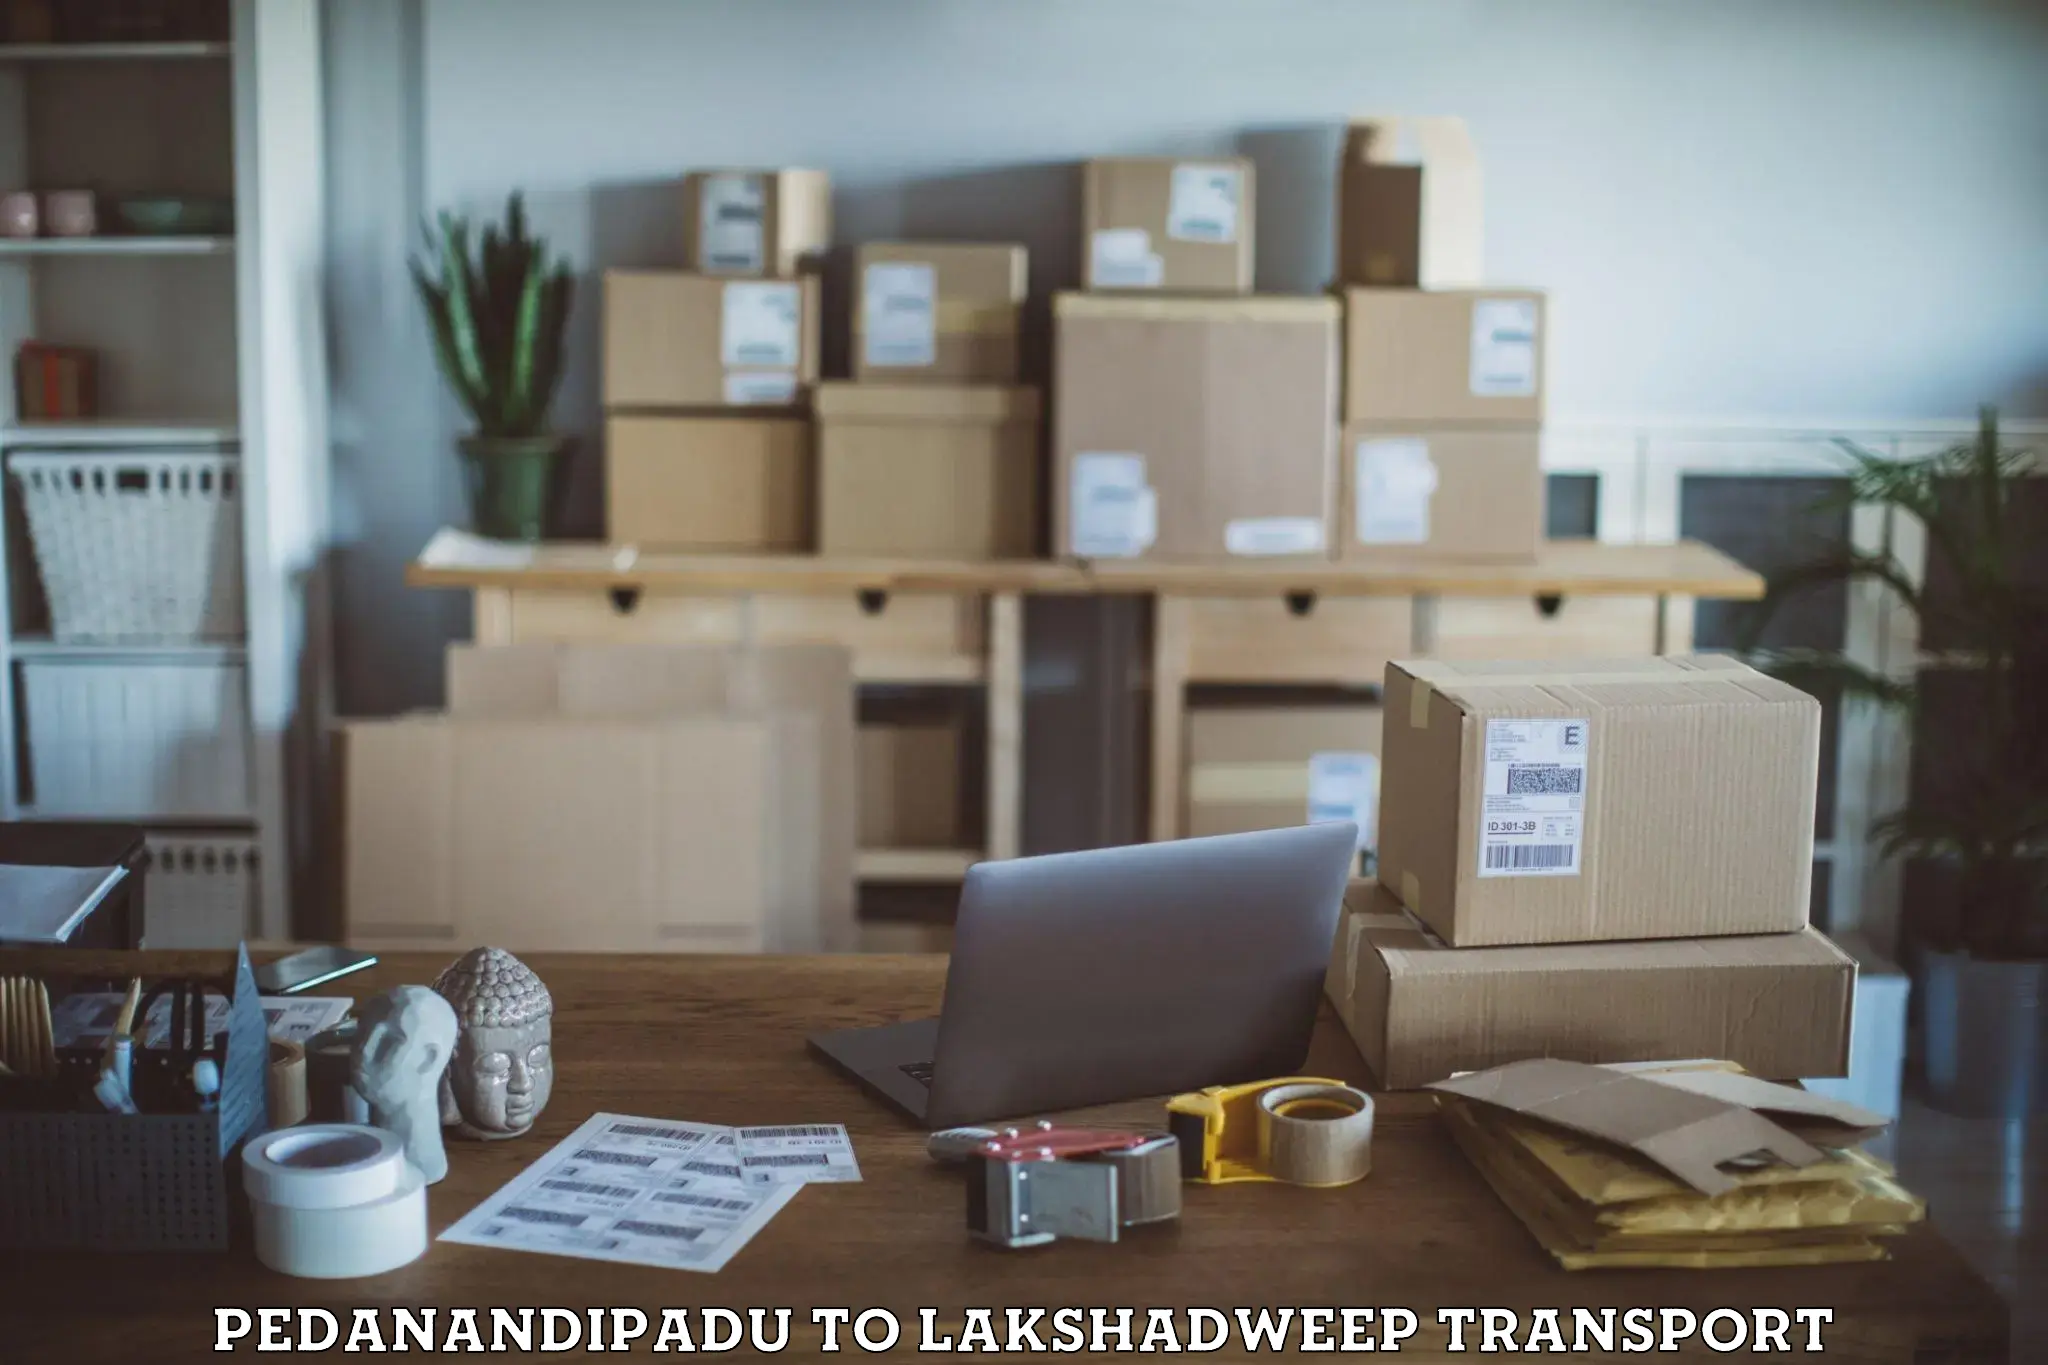 Scooty transport charges Pedanandipadu to Lakshadweep